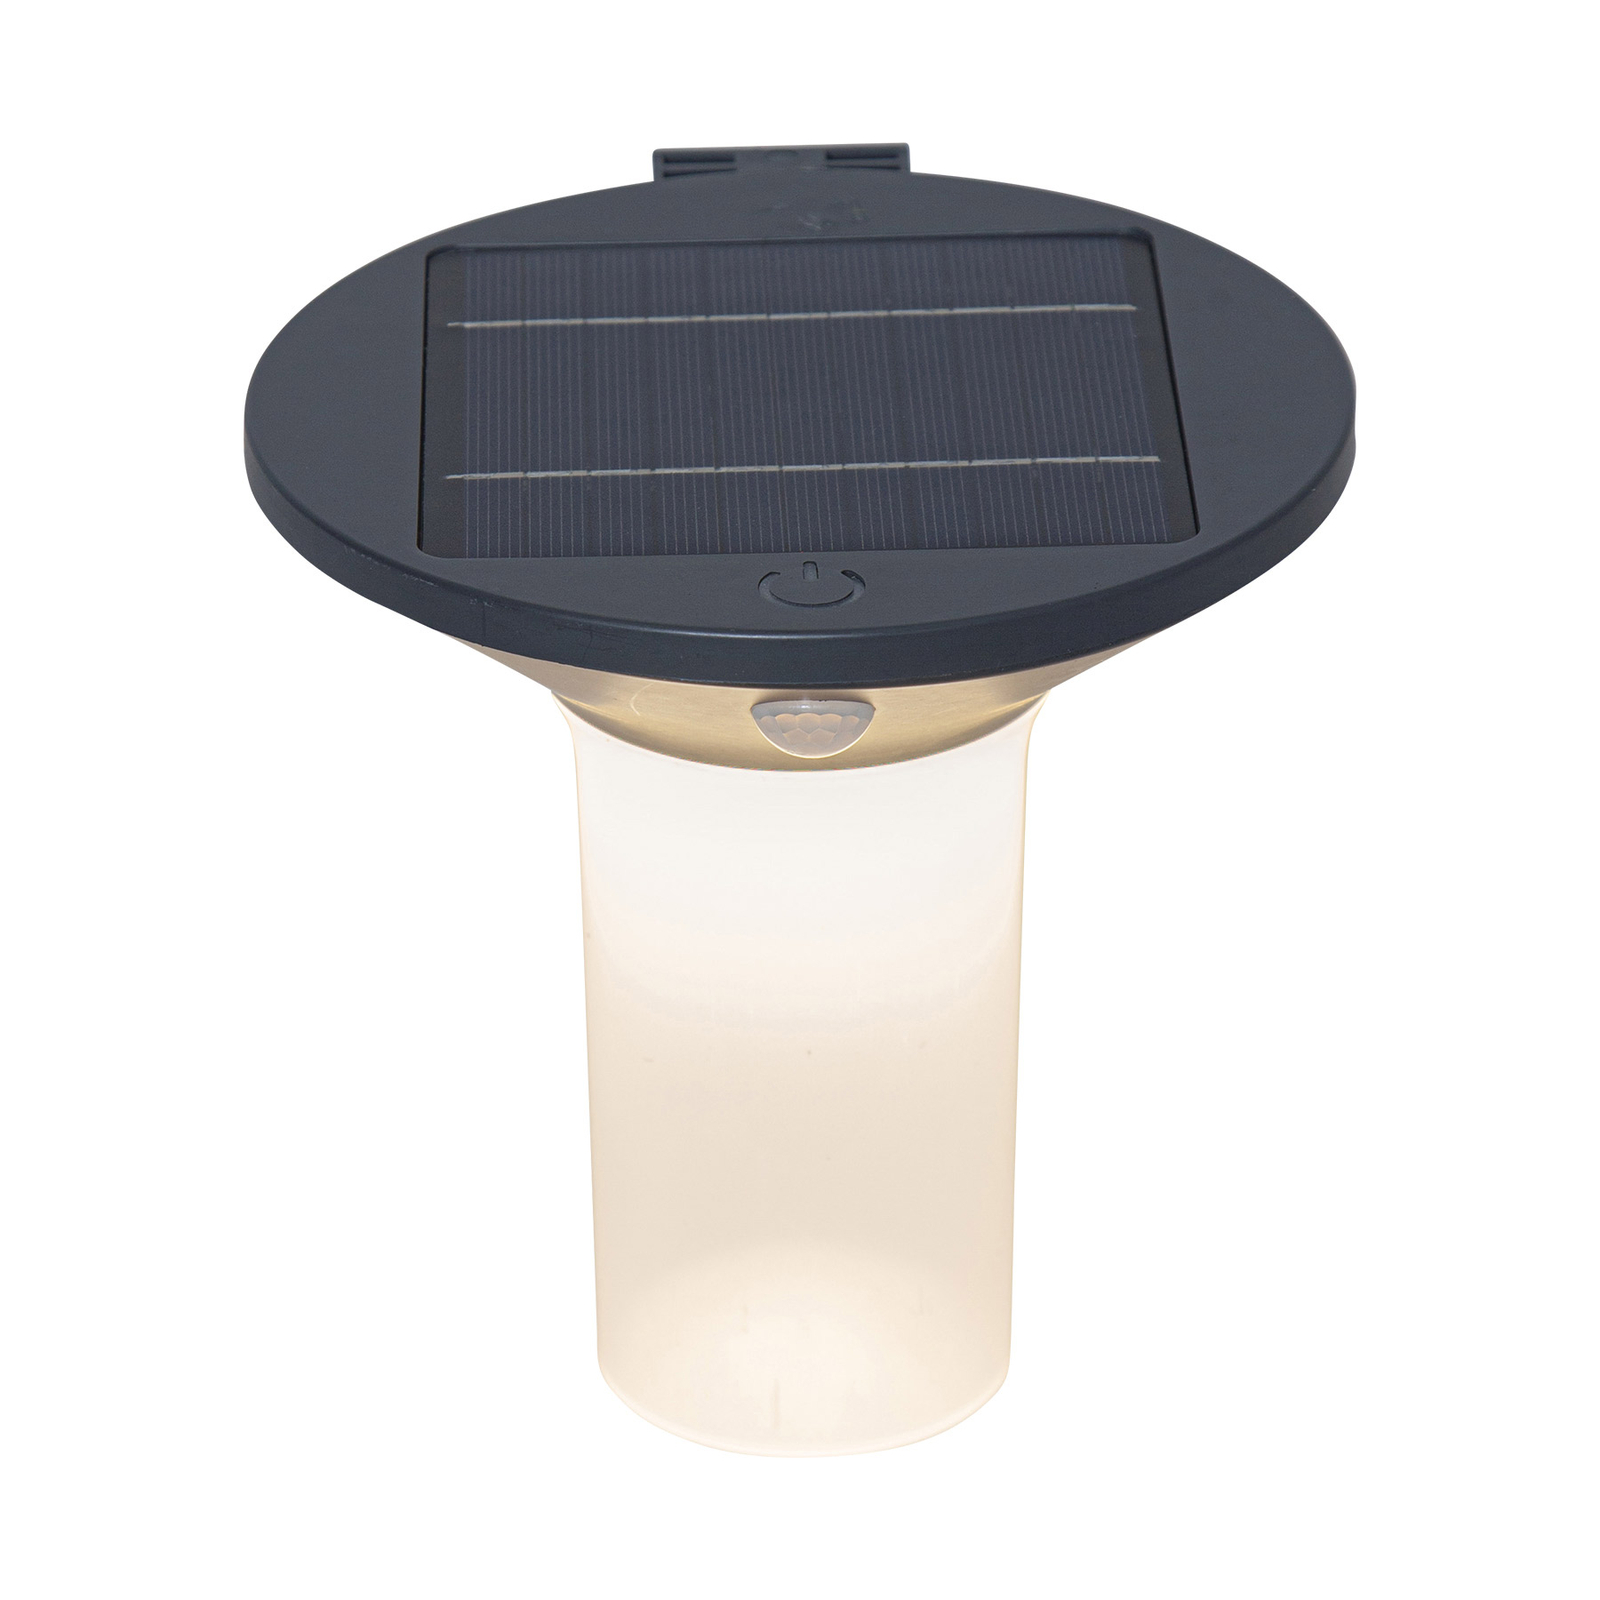 Solární nástěnné svítidlo Valta LED se senzorem pohybu